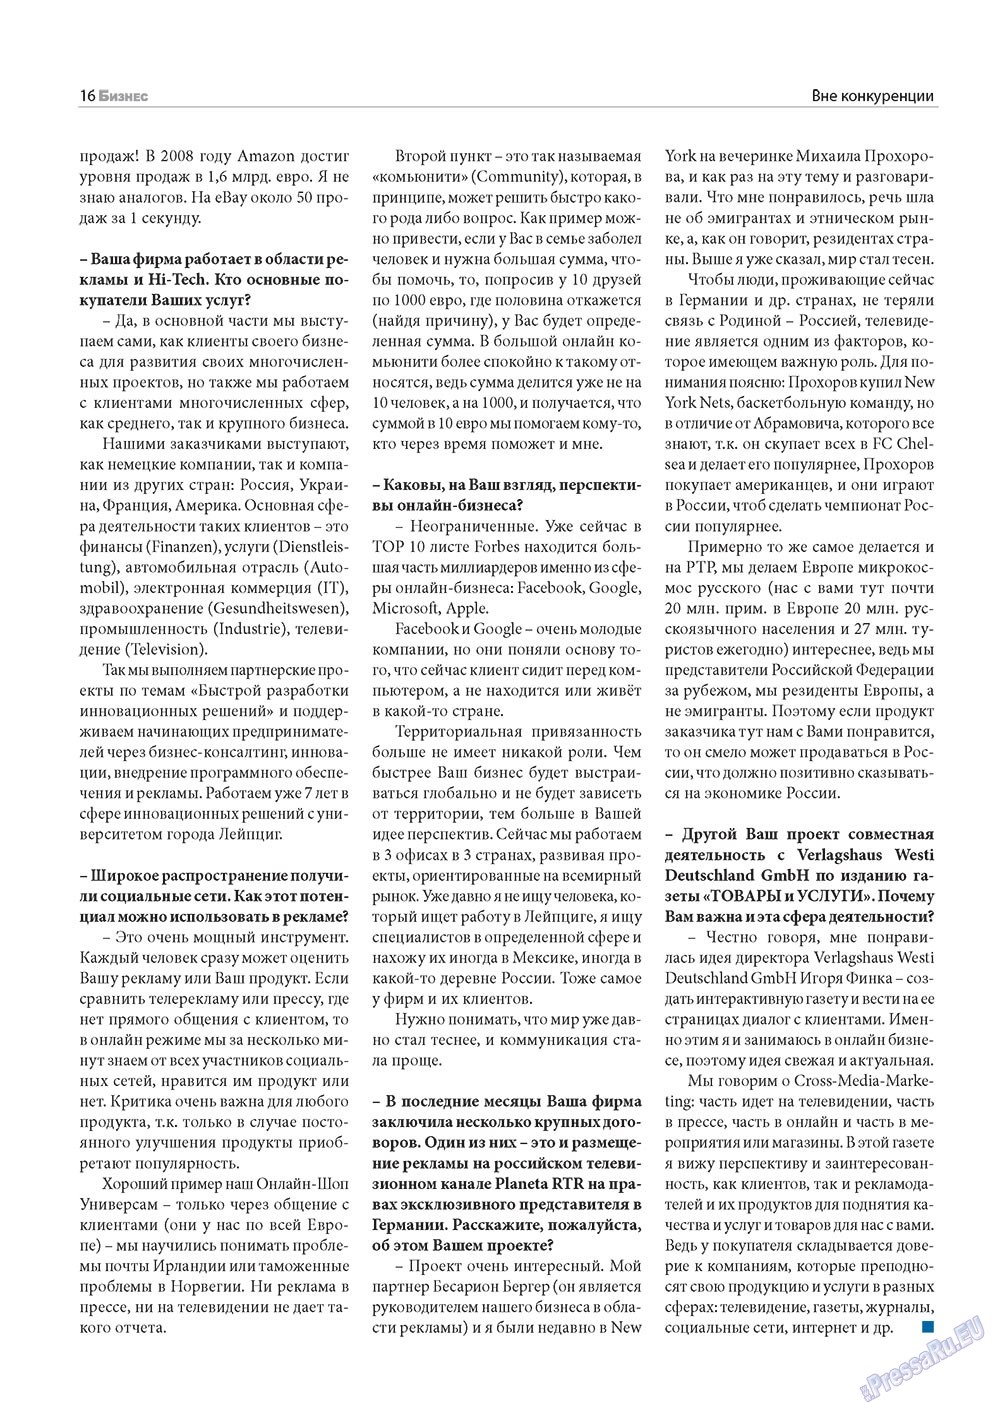 Бизнес, журнал. 2010 №12 стр.16